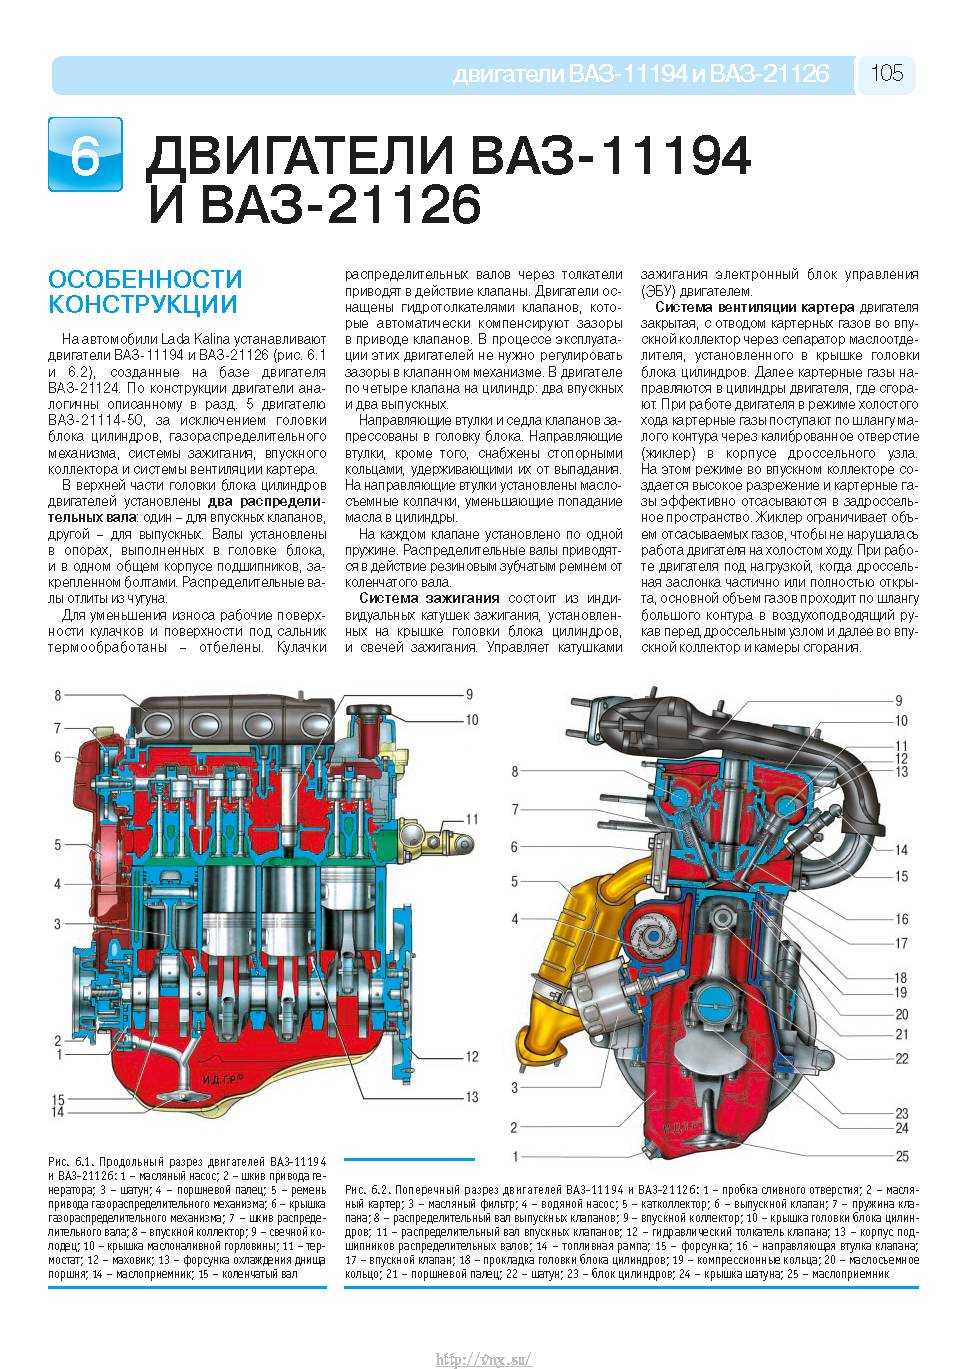 Пути увеличения мощности двигателя ваз-21126 и их влияние на ресурс и ремонтопригодность